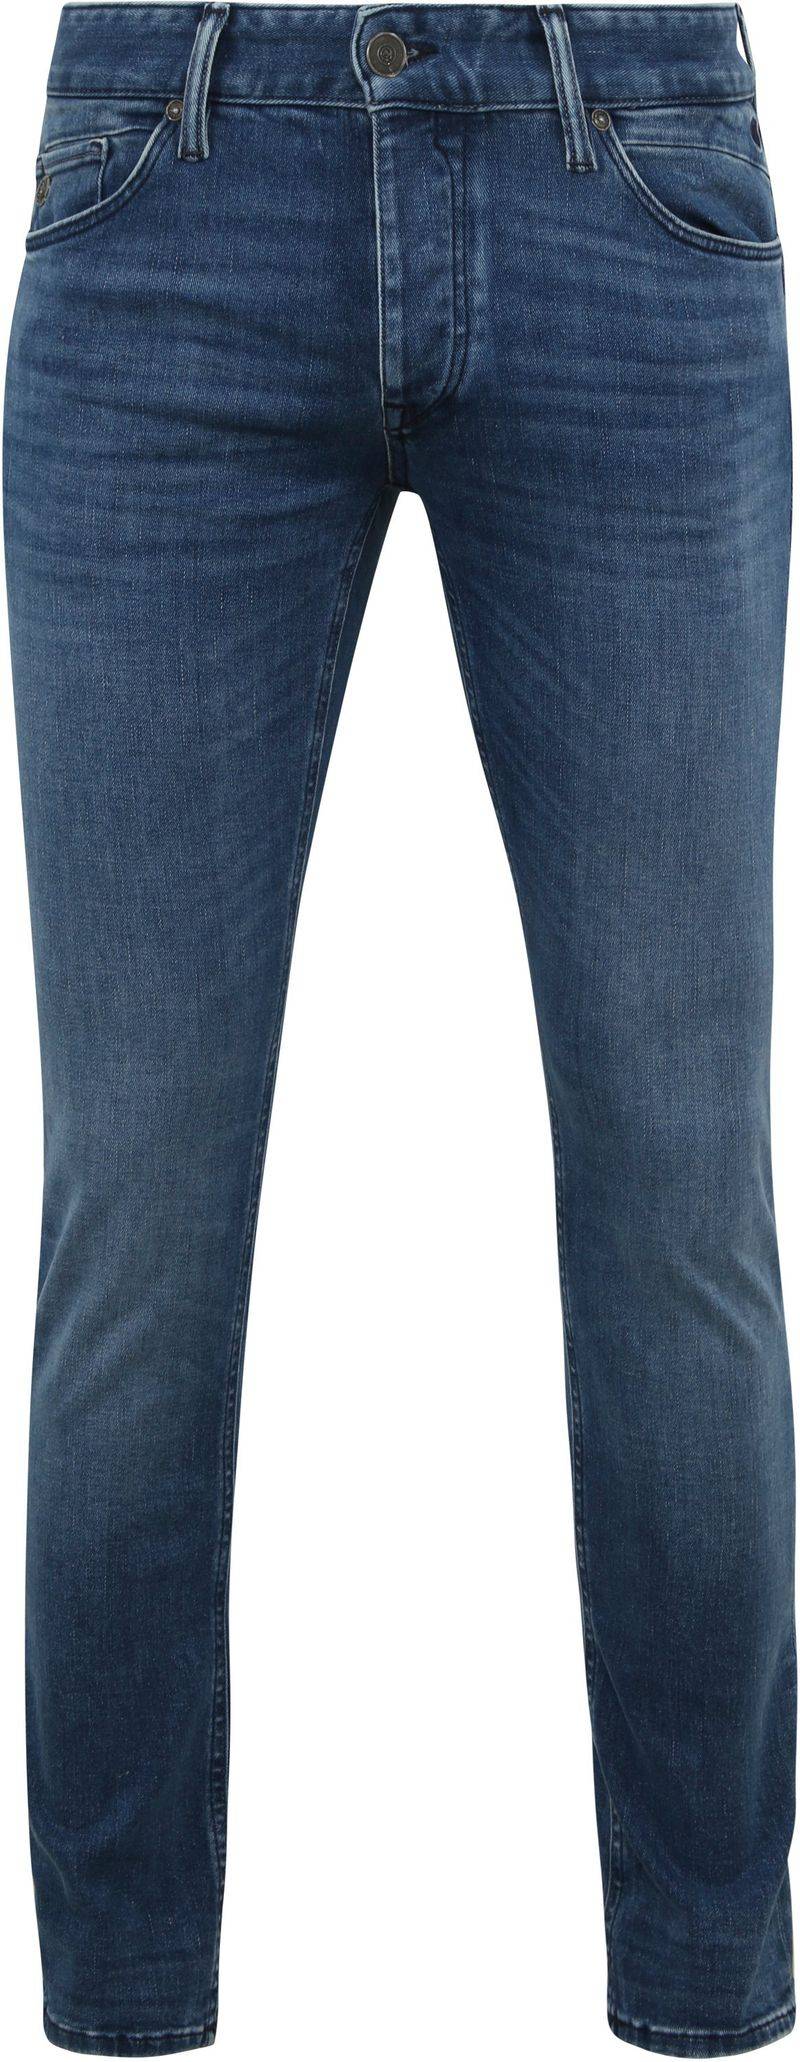 Cast Iron Riser Jeans Blau IIW - Größe W 33 - L 34 von Cast Iron